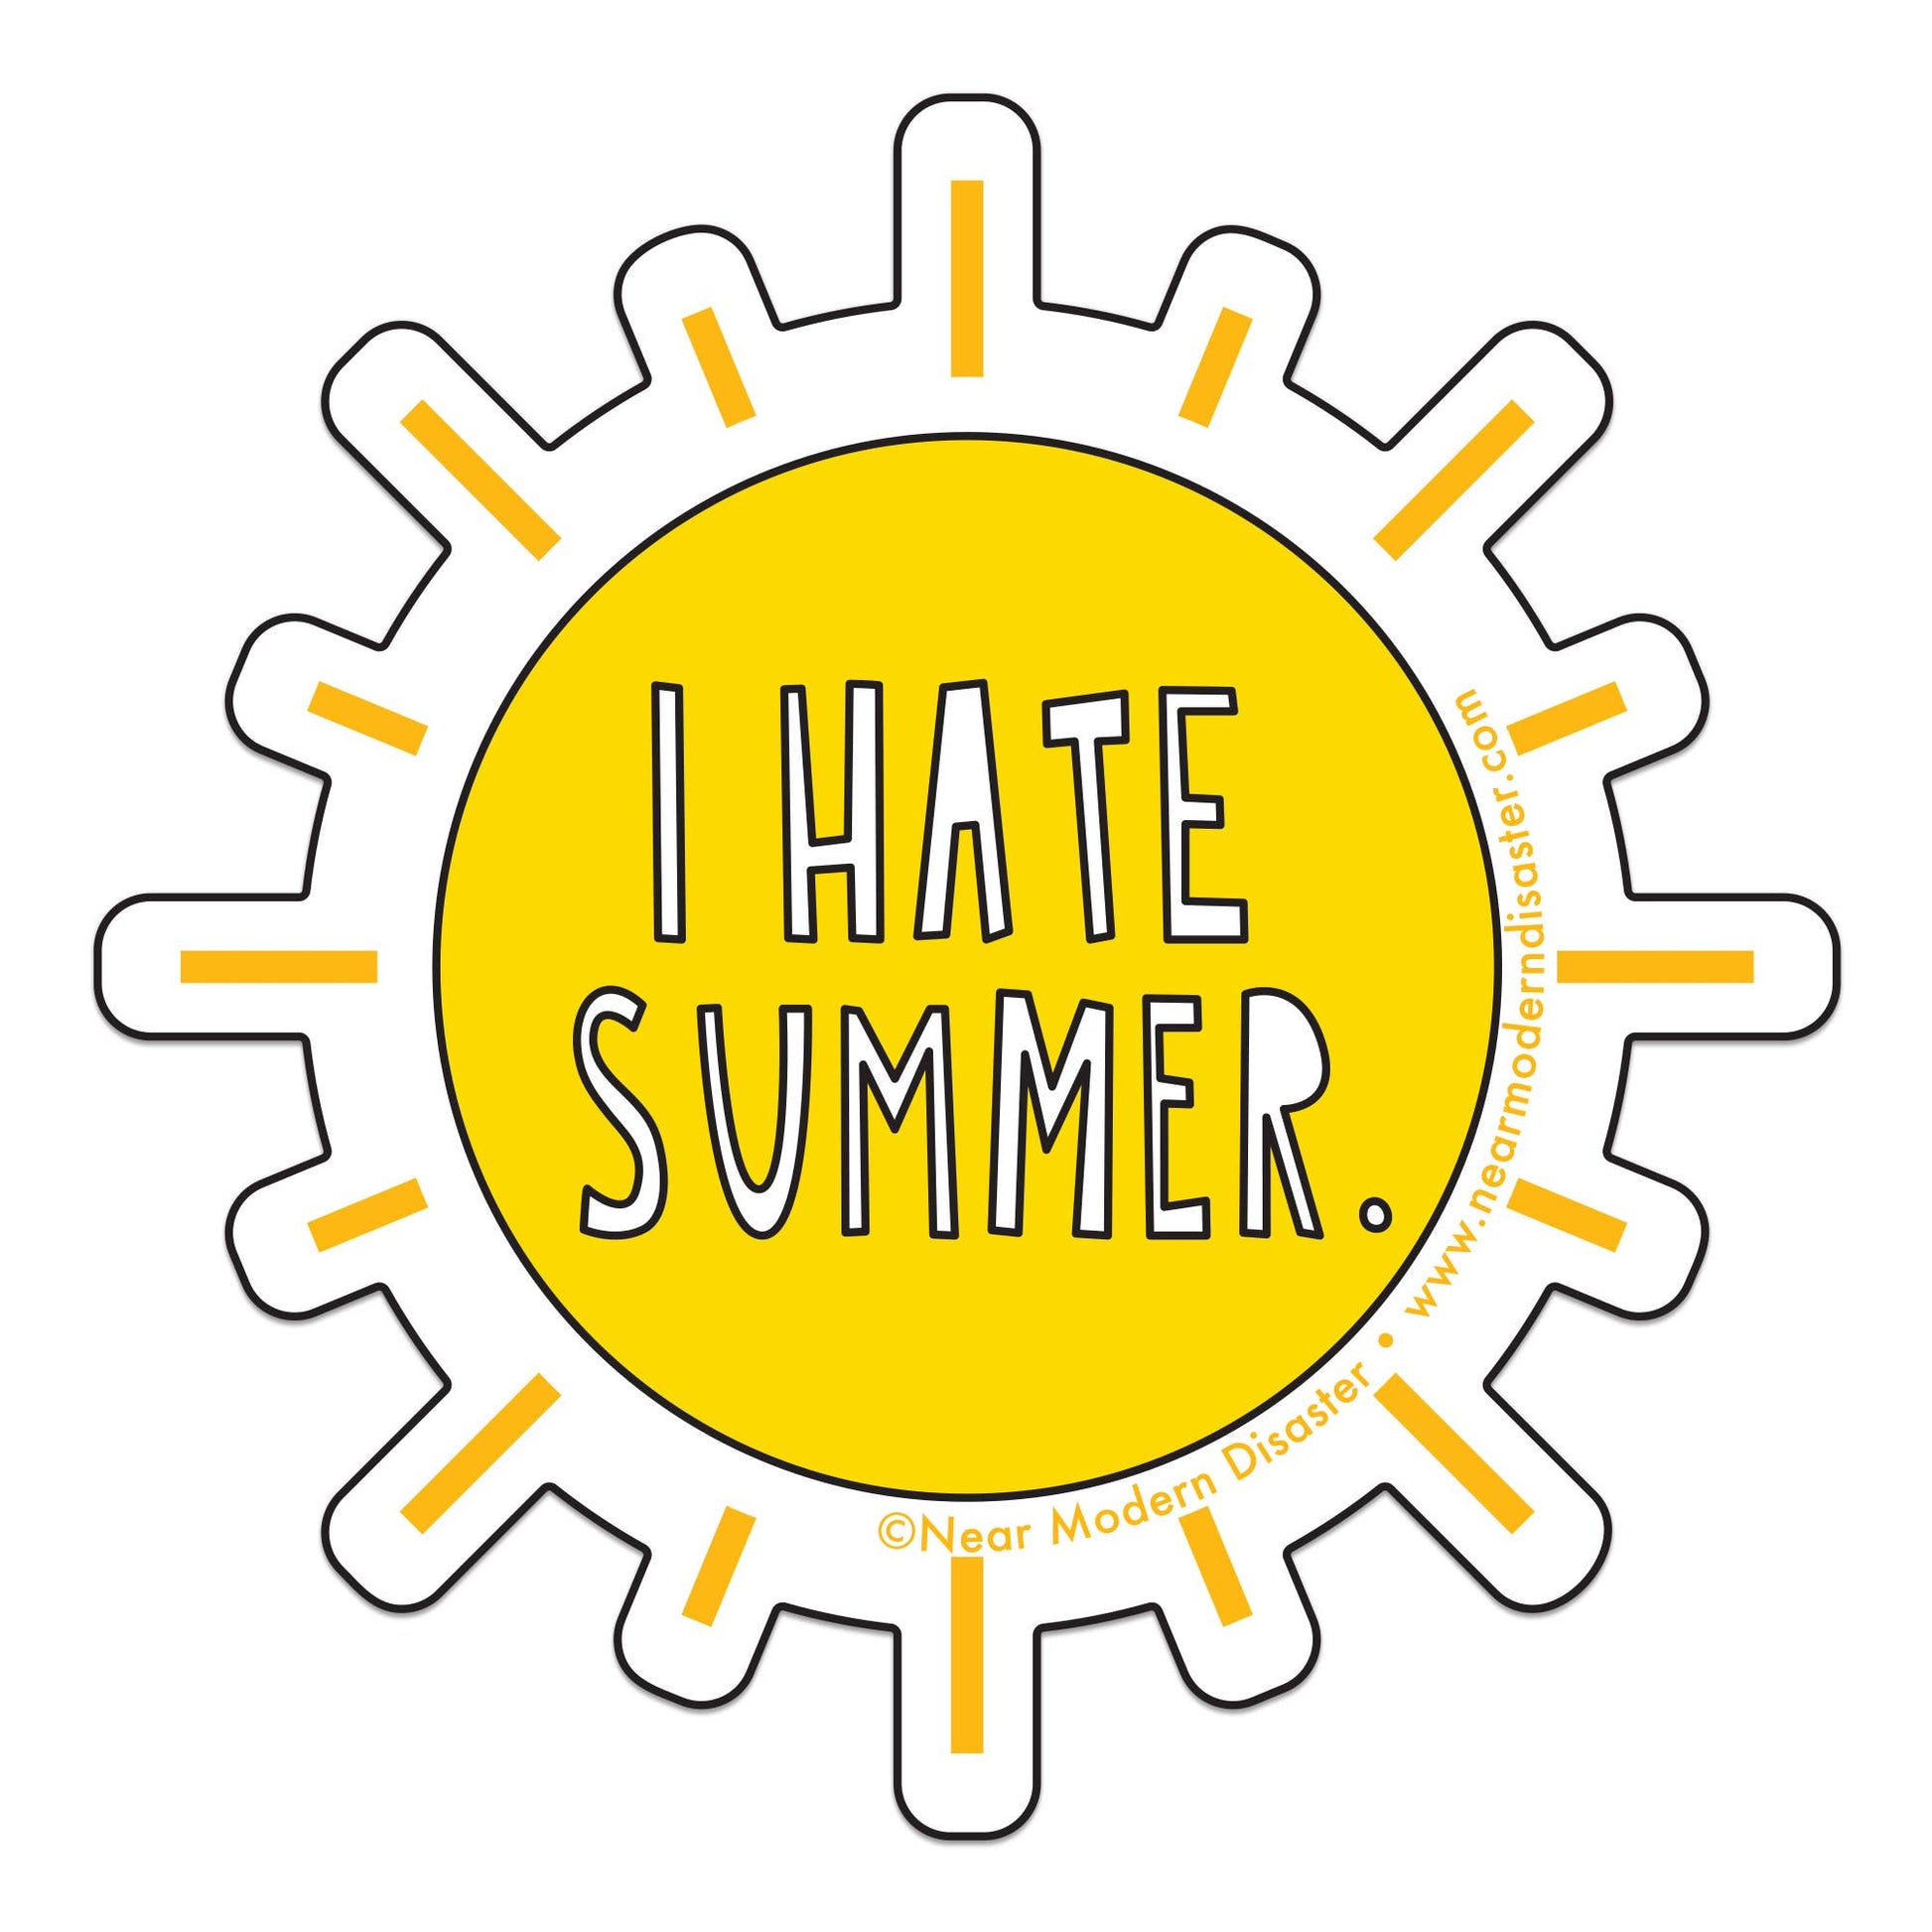 I Hate Summer - 3" vinyl sticker - homesewn